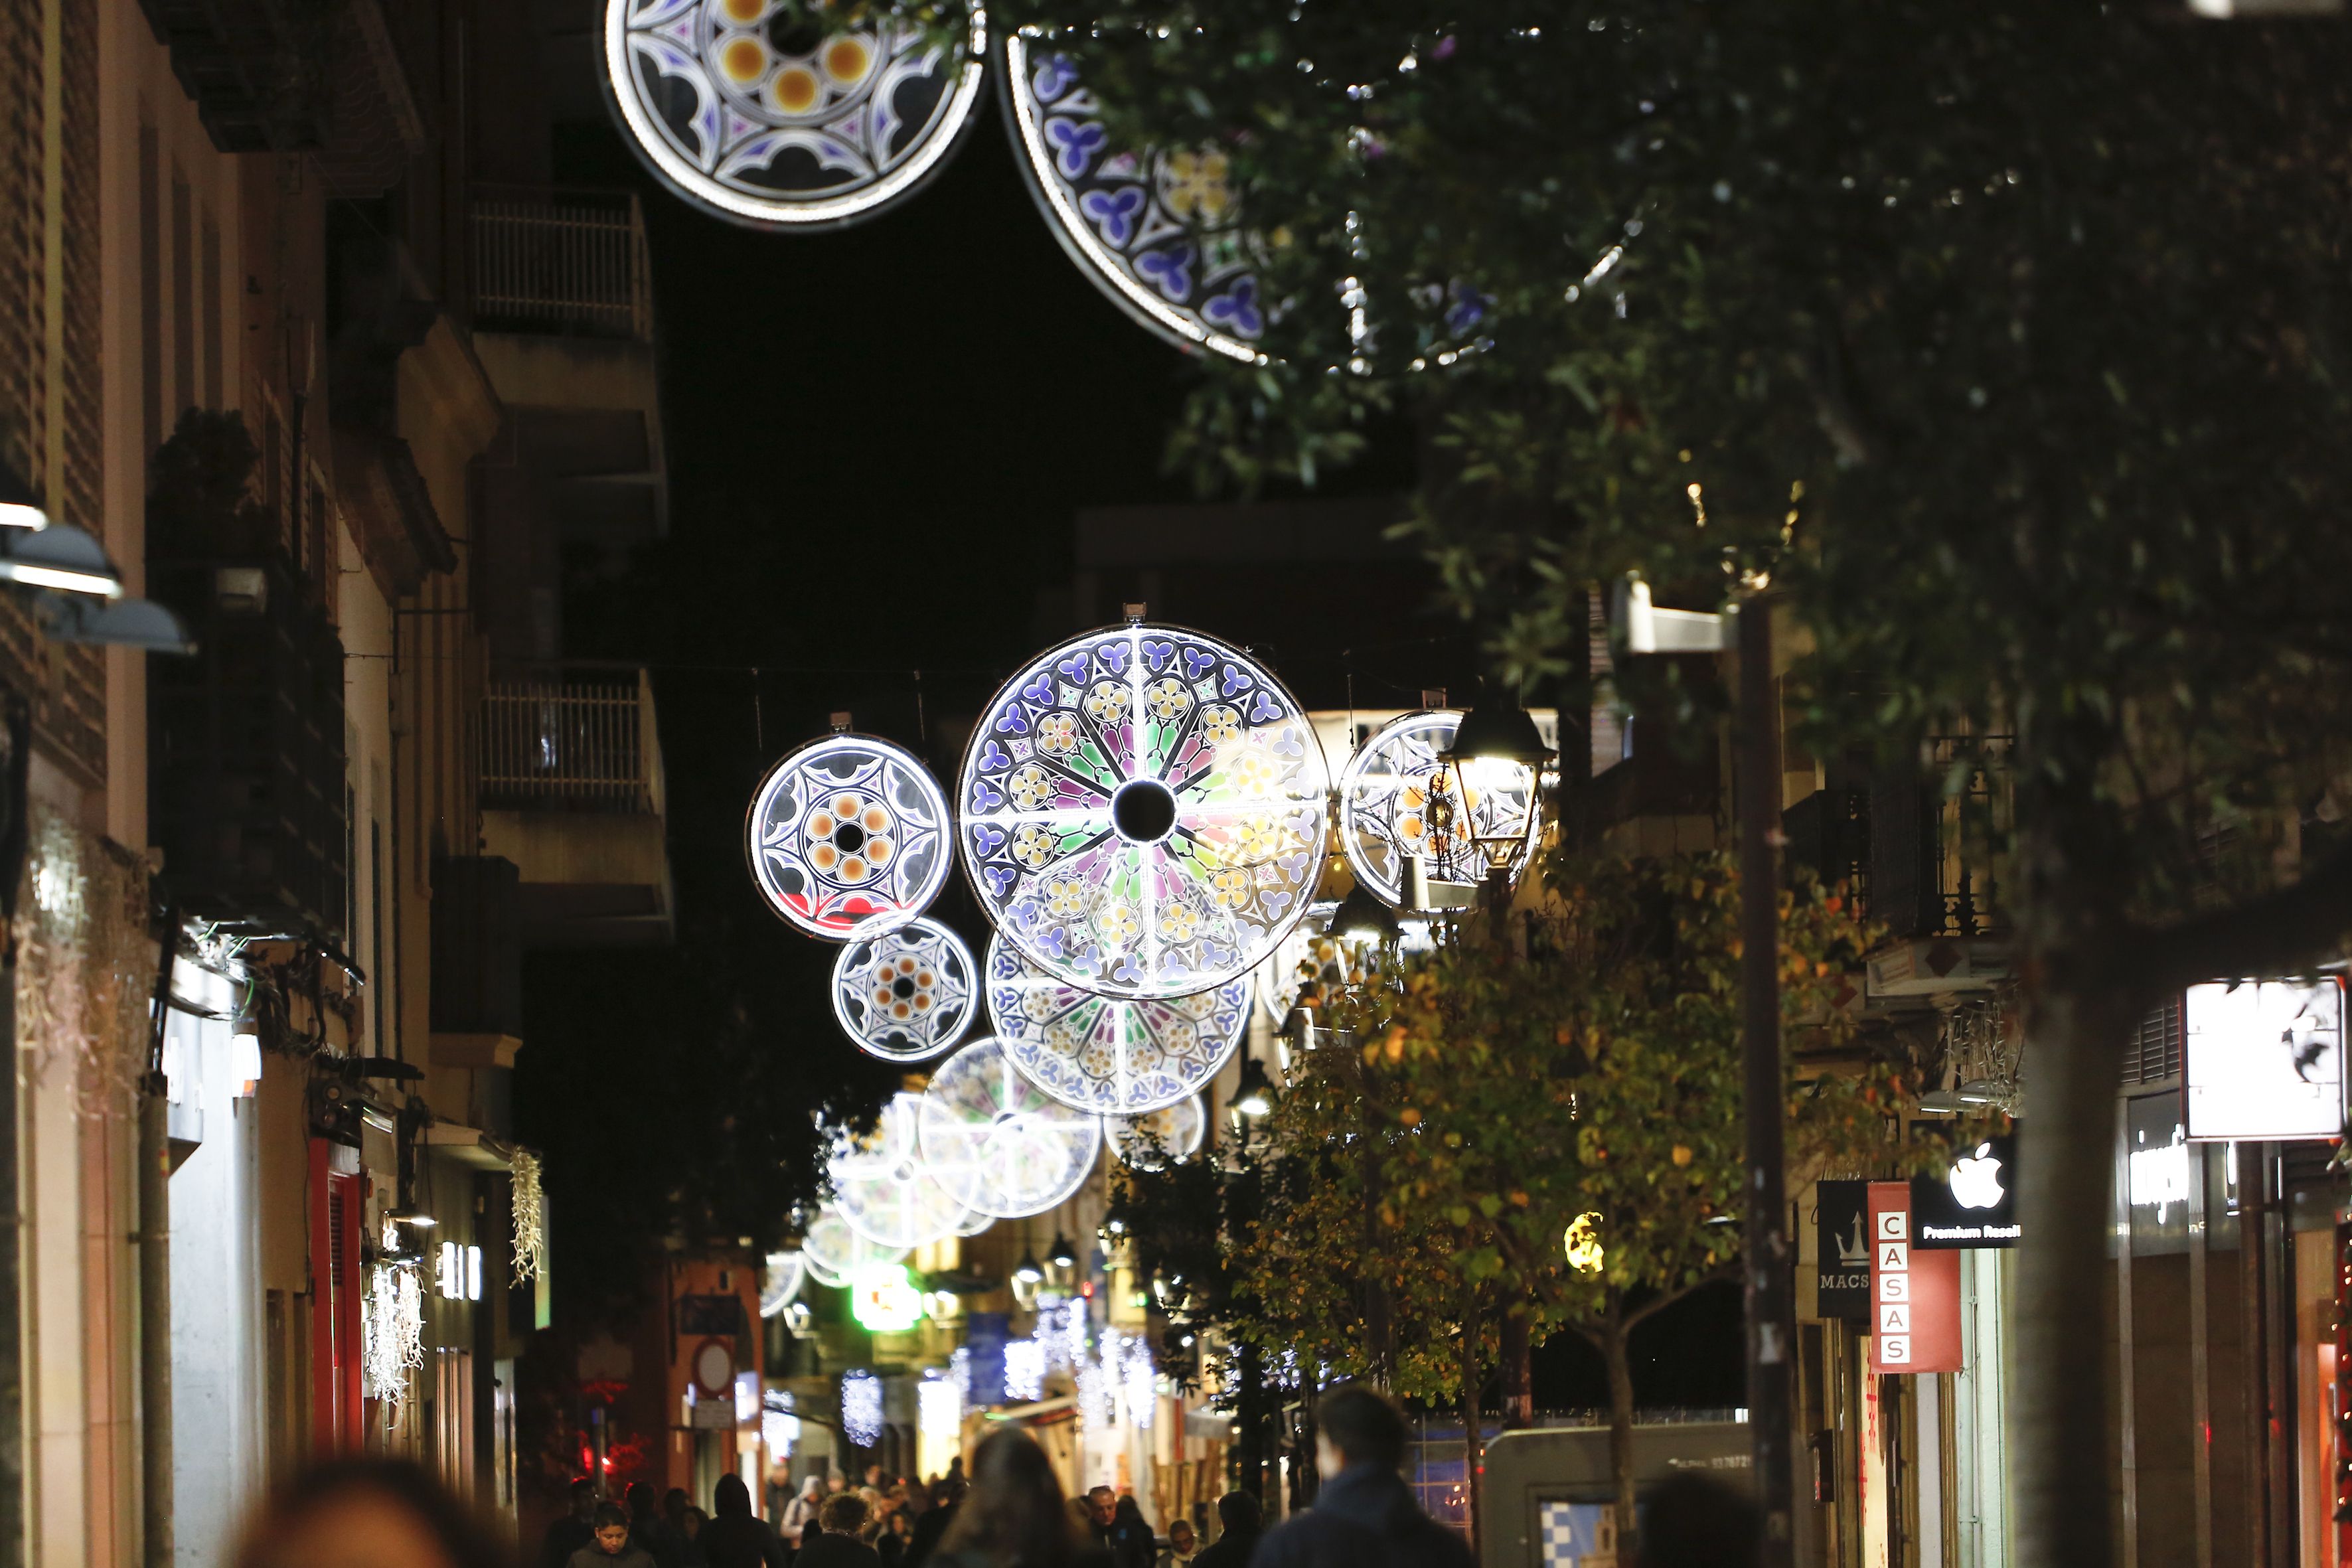 Les llums de NADAL als carrers de Sant Cugat. FOTO: Yves Dimant